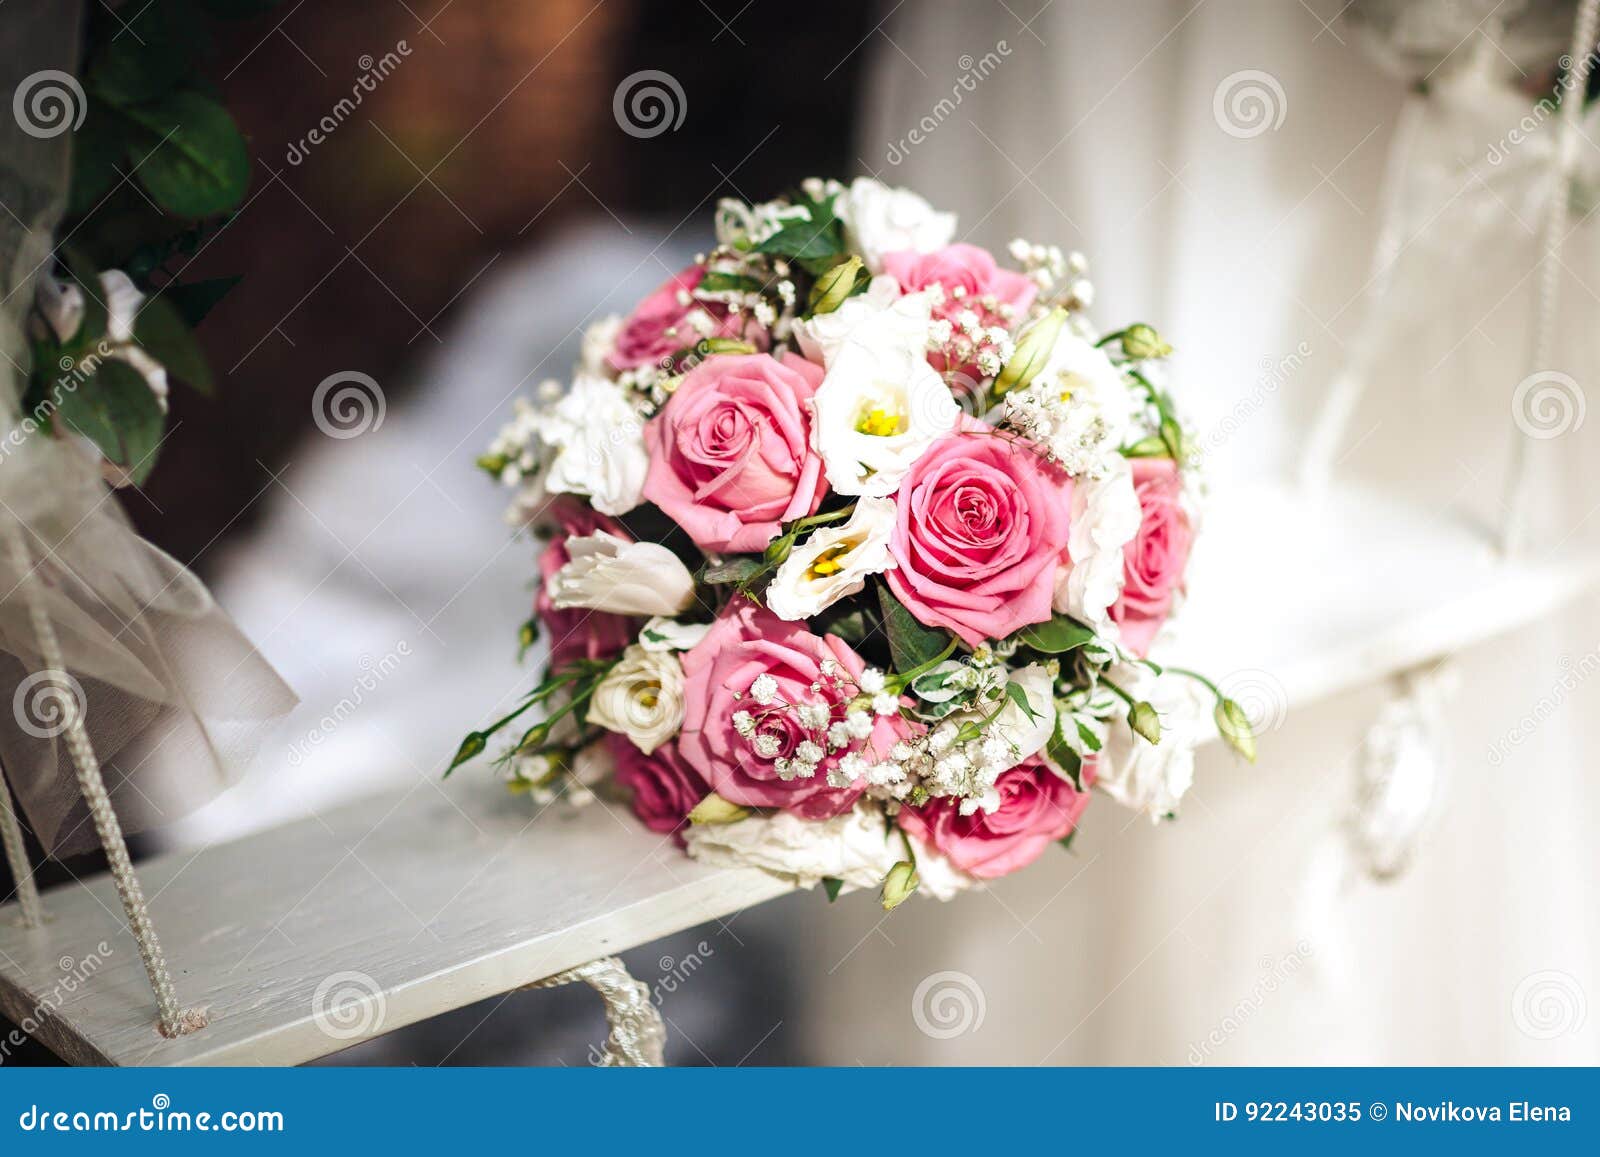 Ramalhete Do Casamento Das Rosas Brancas E Cor-de-rosa No Balanço De  Madeira Branco, Um Ramalhete Da Noiva, Close-up Imagem de Stock - Imagem de  detalhe, floral: 92243035